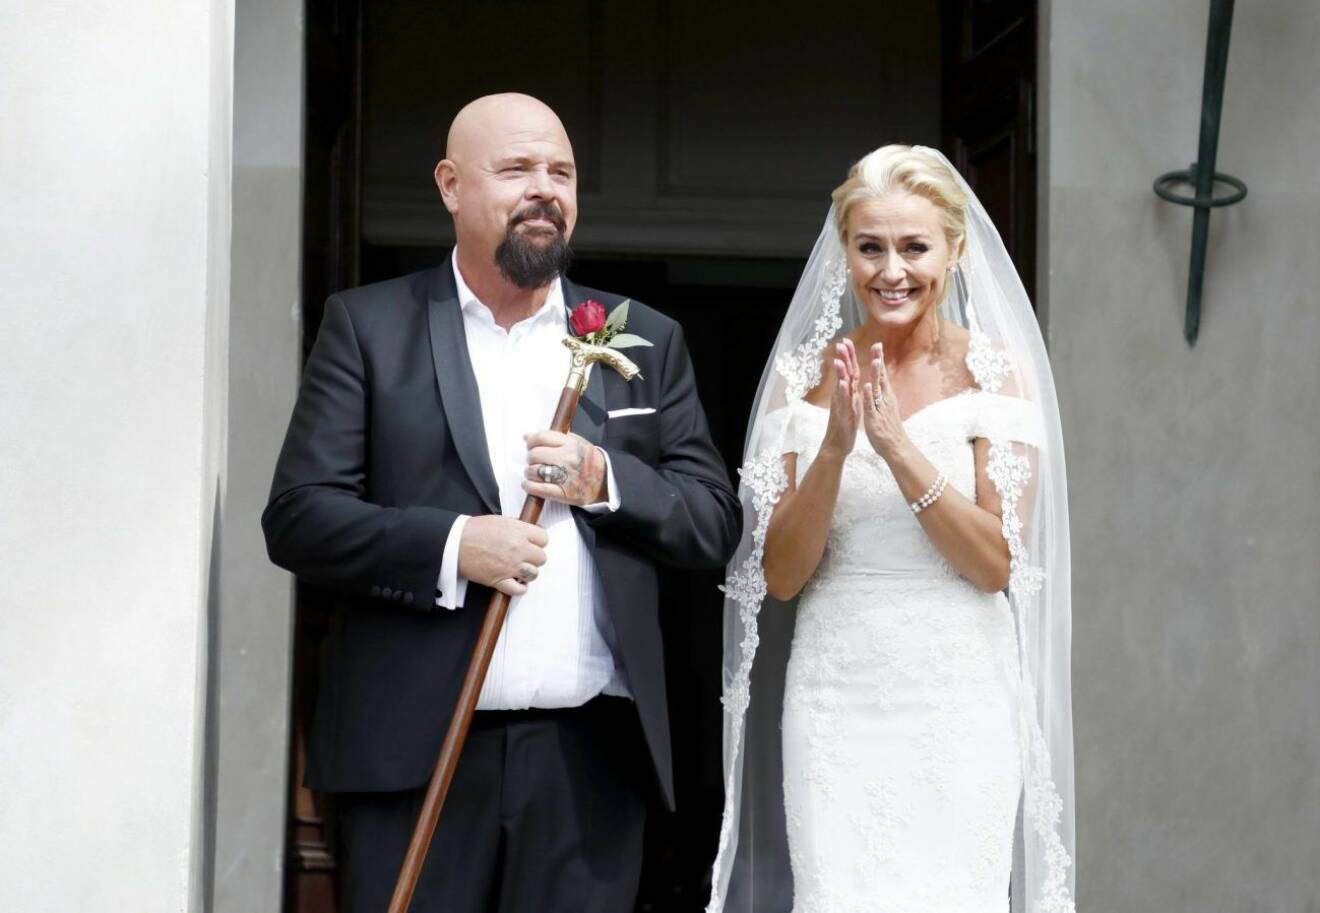 Anders Bagge och Johanna Lind gifte sig framför tv-kameror 2018.